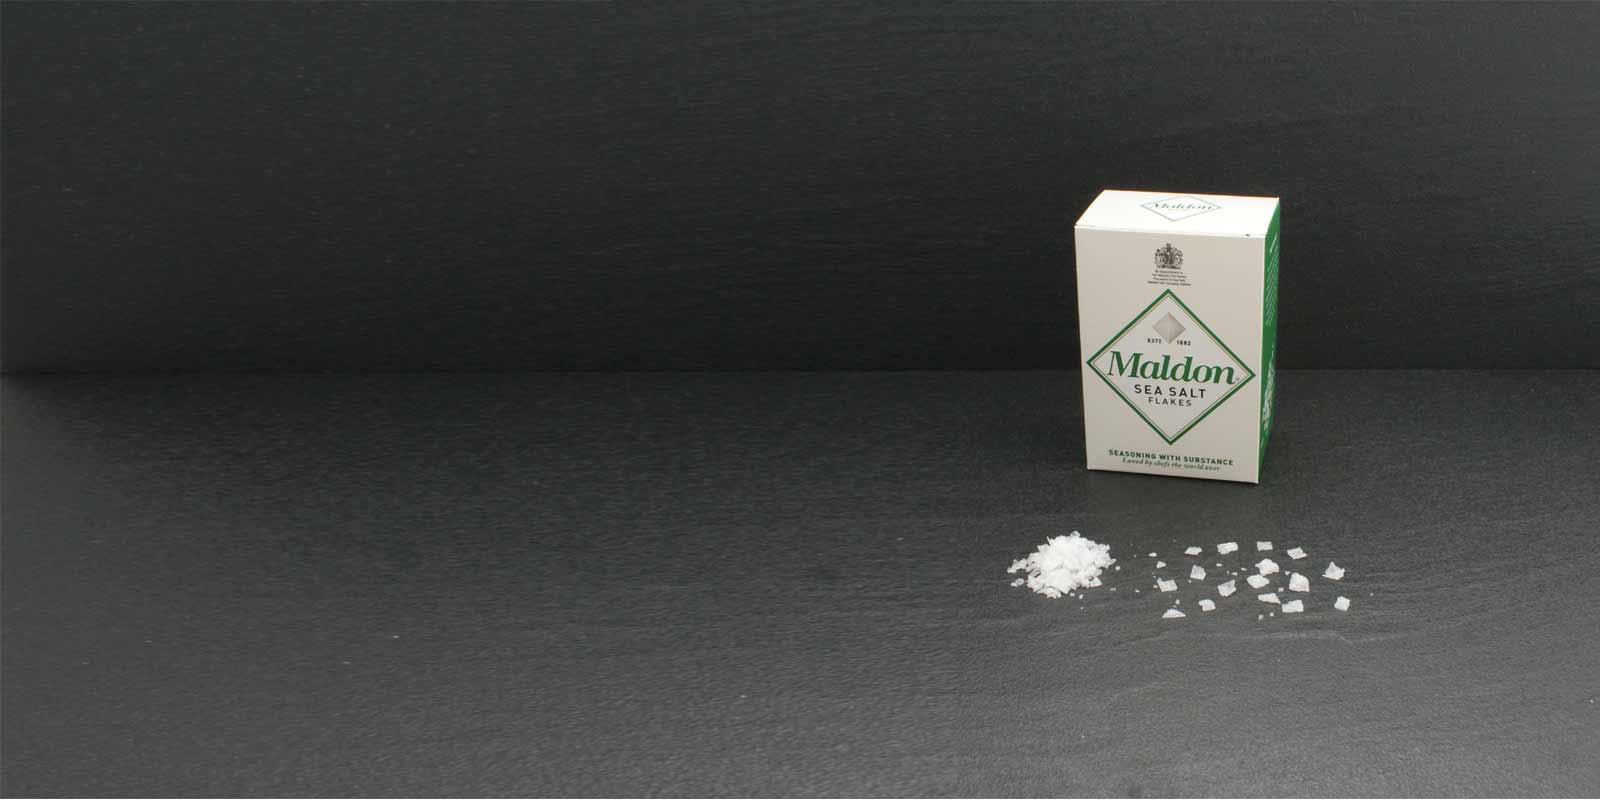 Krysztaly w postaci platkow soli morskiej Maldon Charakterystyczne krysztalki soli w ksztalcie piramidy sa niezwykle cienkie i mozna je latwo rozetrzec miedzy palcami w celu doprawienia. Cenna sol wydobywana jest przez Maldon Sea Salt Company, jedyna firme wydobywajaca sol w Anglii. Ta mala rodzinna firma przetwarza i sprzedaje sol od 1882 roku. Sol morska Maldon jest dostepna tylko w ograniczonych ilosciach.